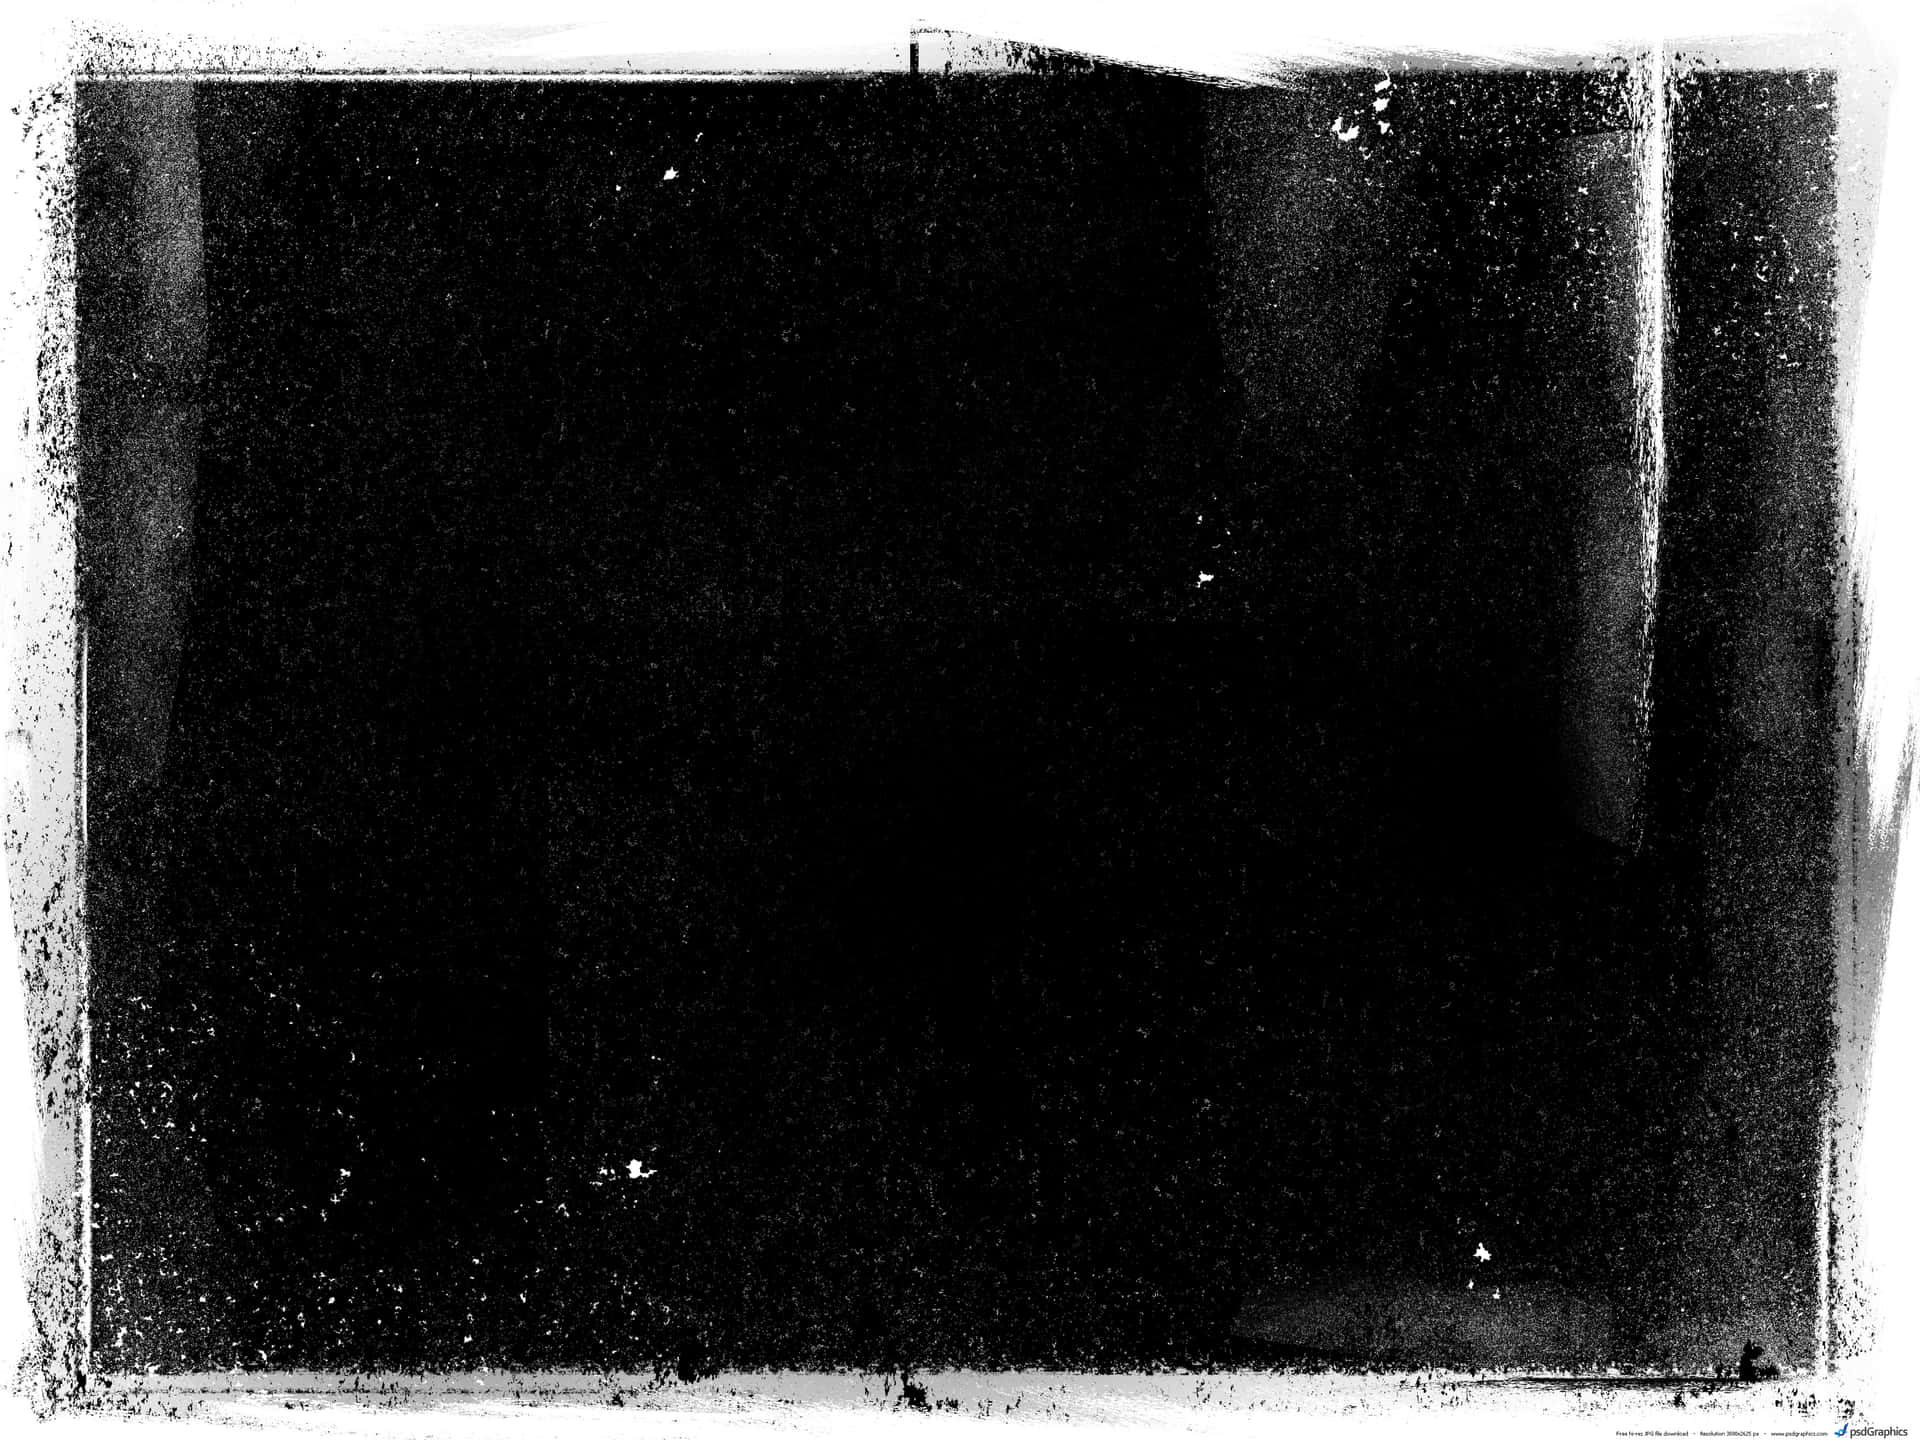 Unafotografía En Blanco Y Negro De Un Cuadrado Fondo de pantalla